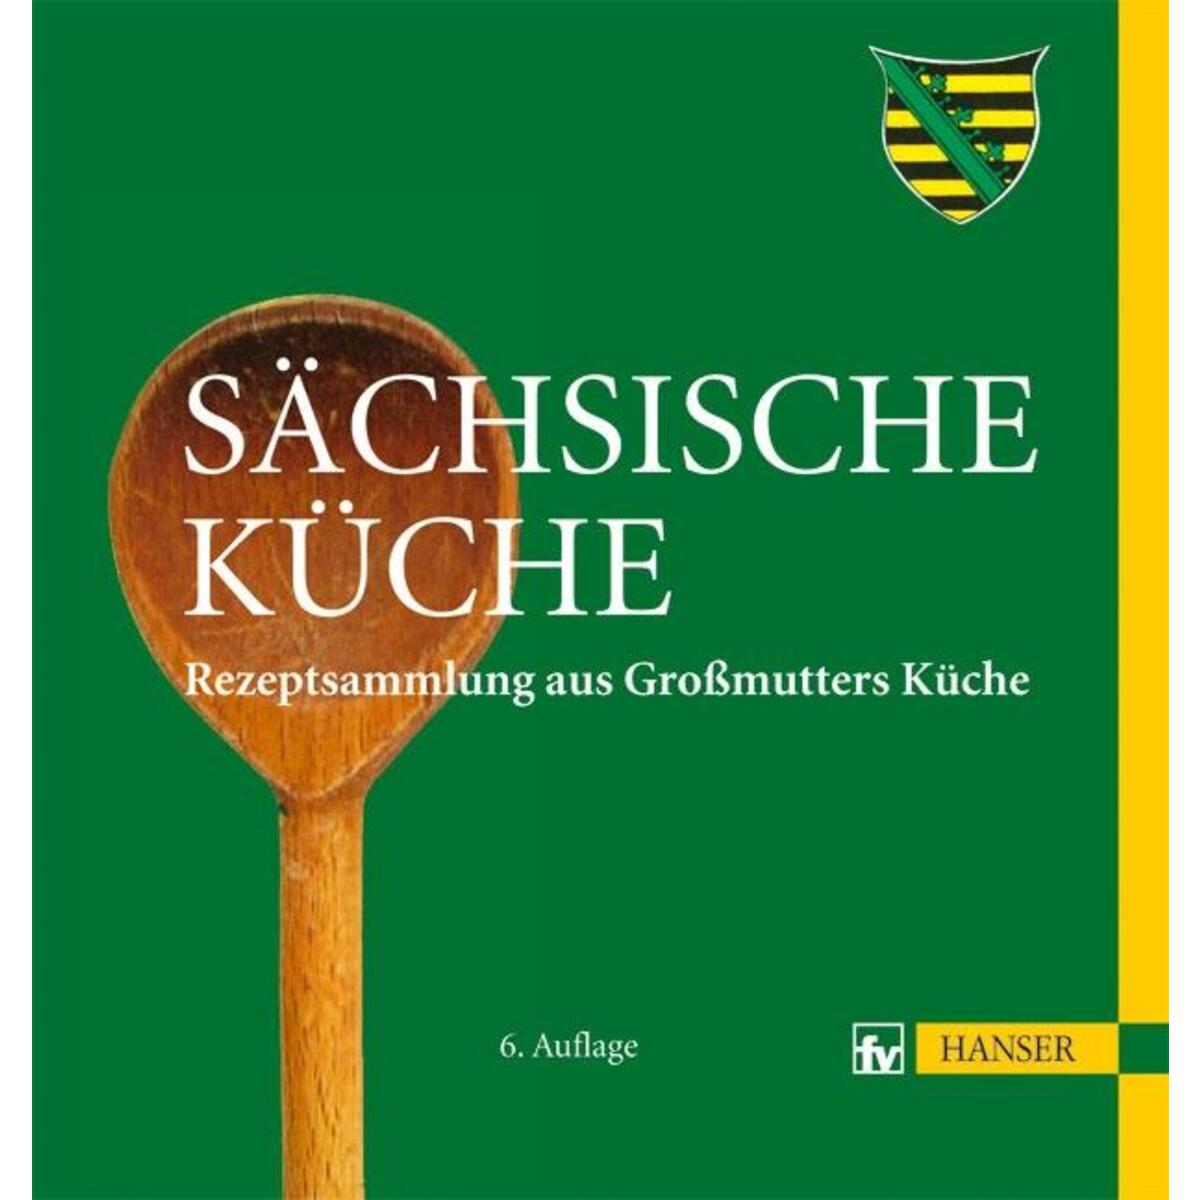 Sächsische Küche von Carl Hanser Verlag